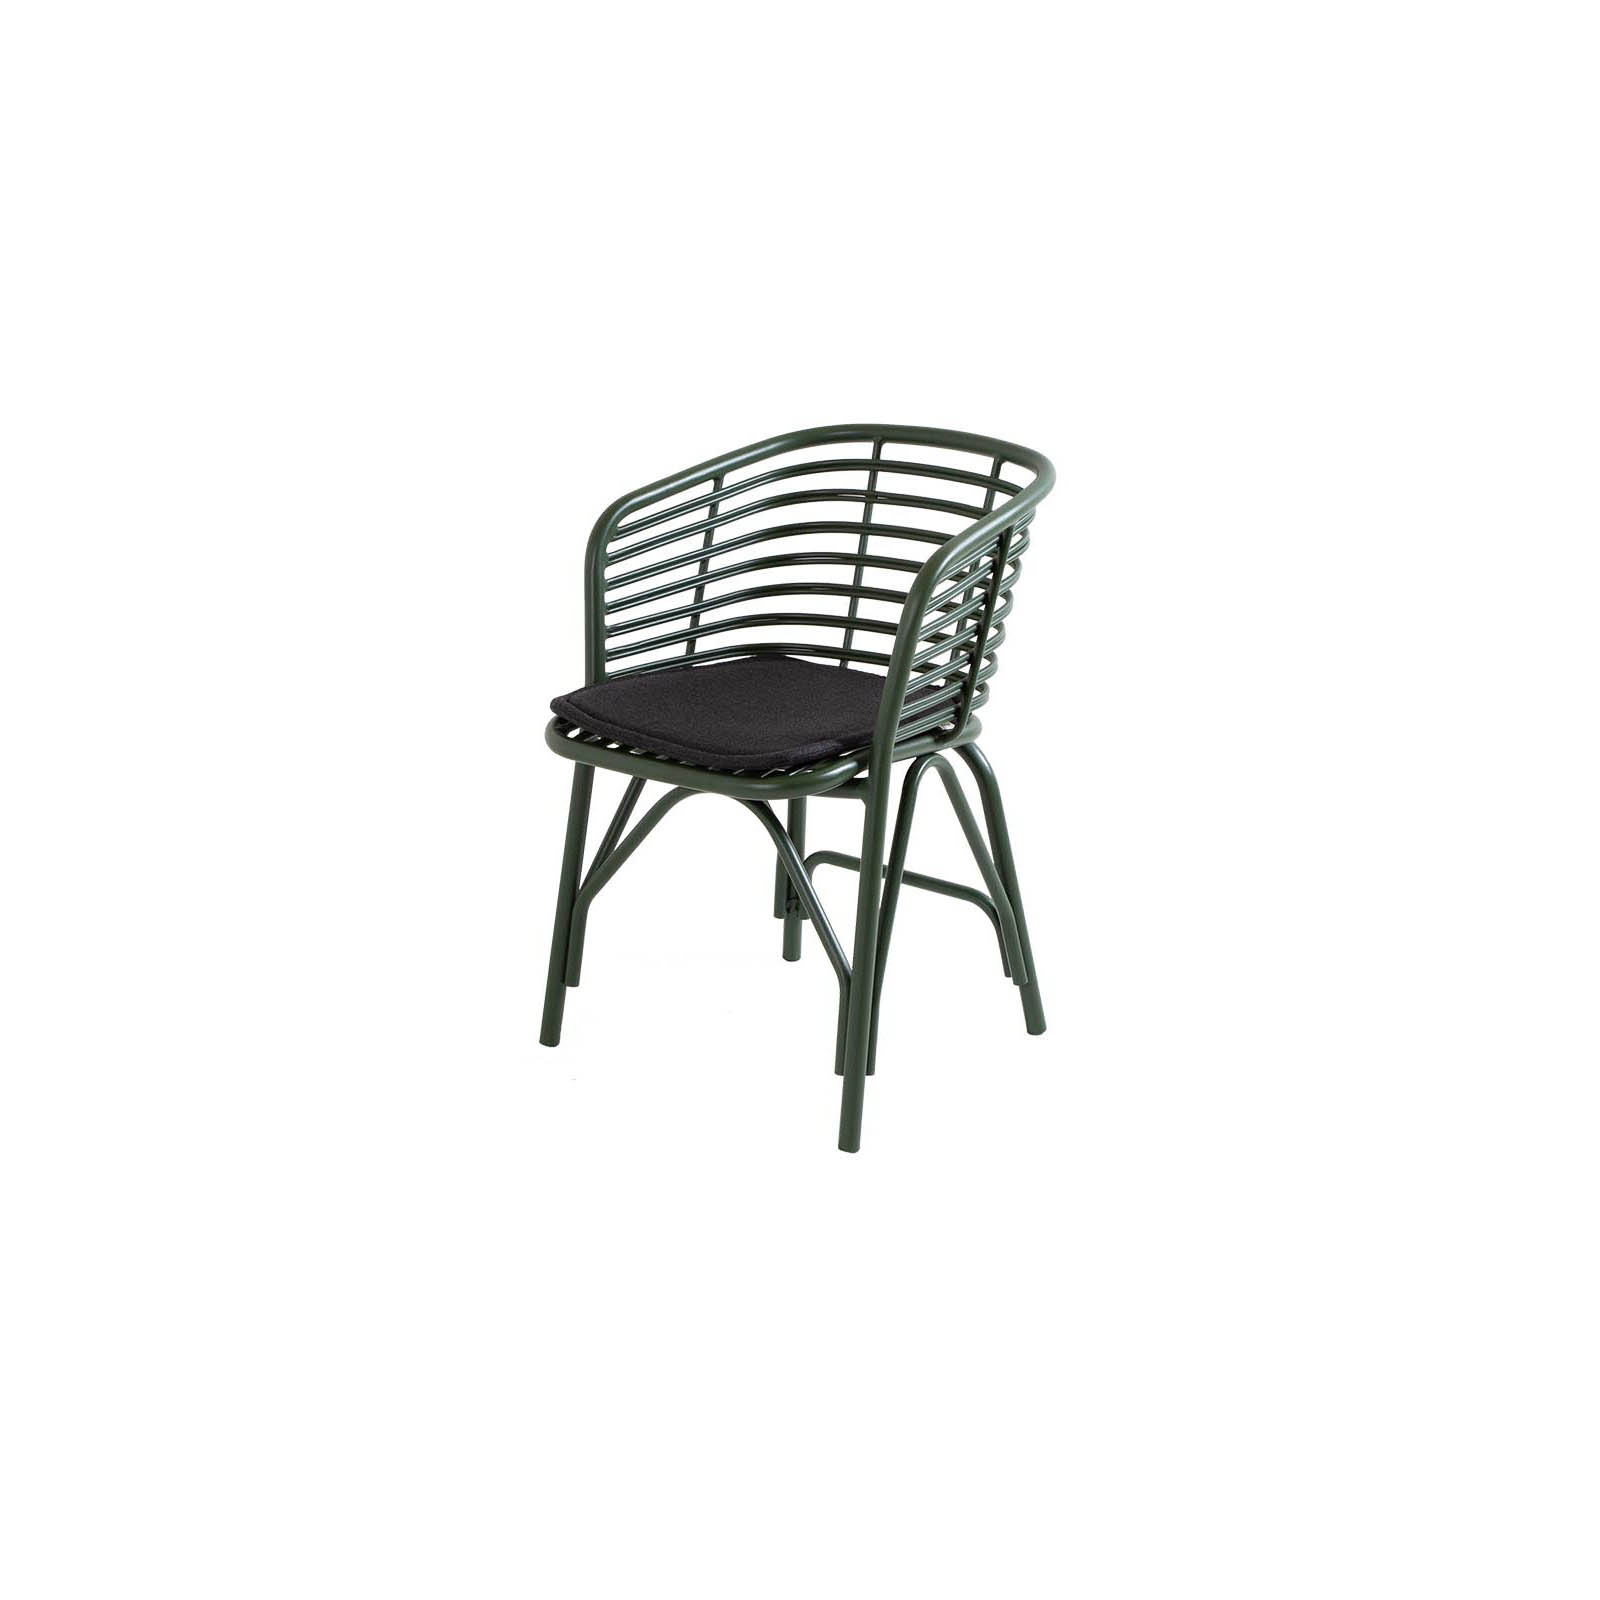 Blend Stuhl aus Aluminium in Dark Green mit Kissen aus Cane-line Natté in Black